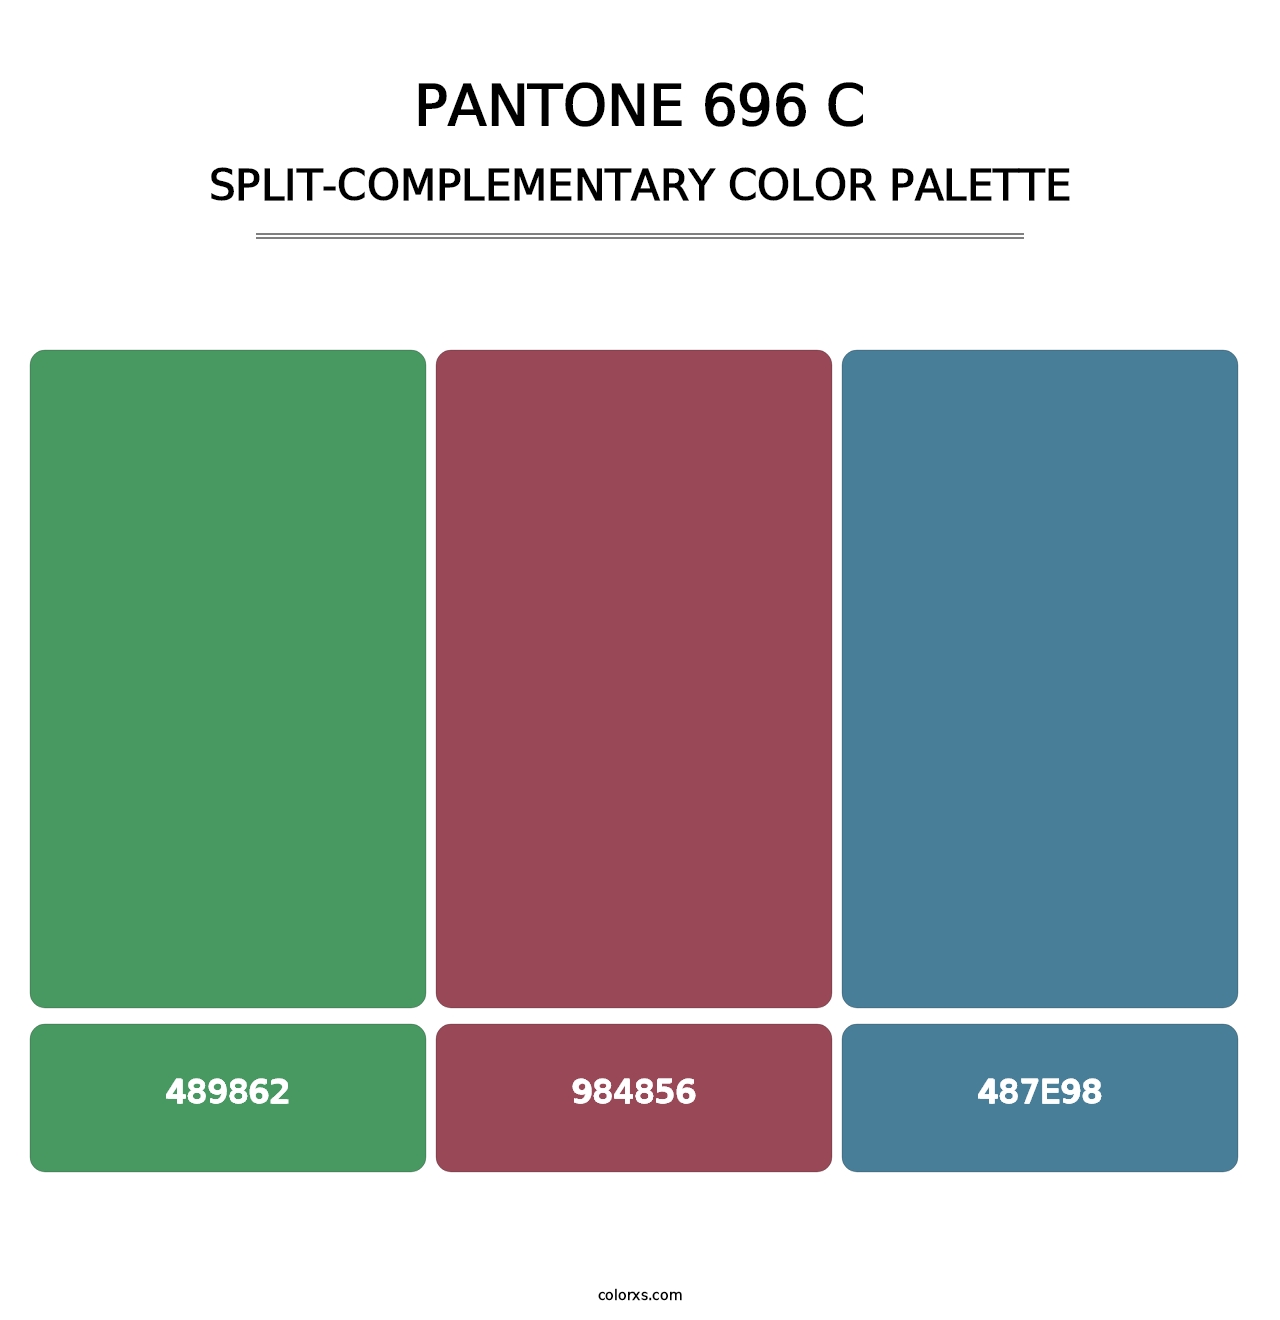 PANTONE 696 C - Split-Complementary Color Palette